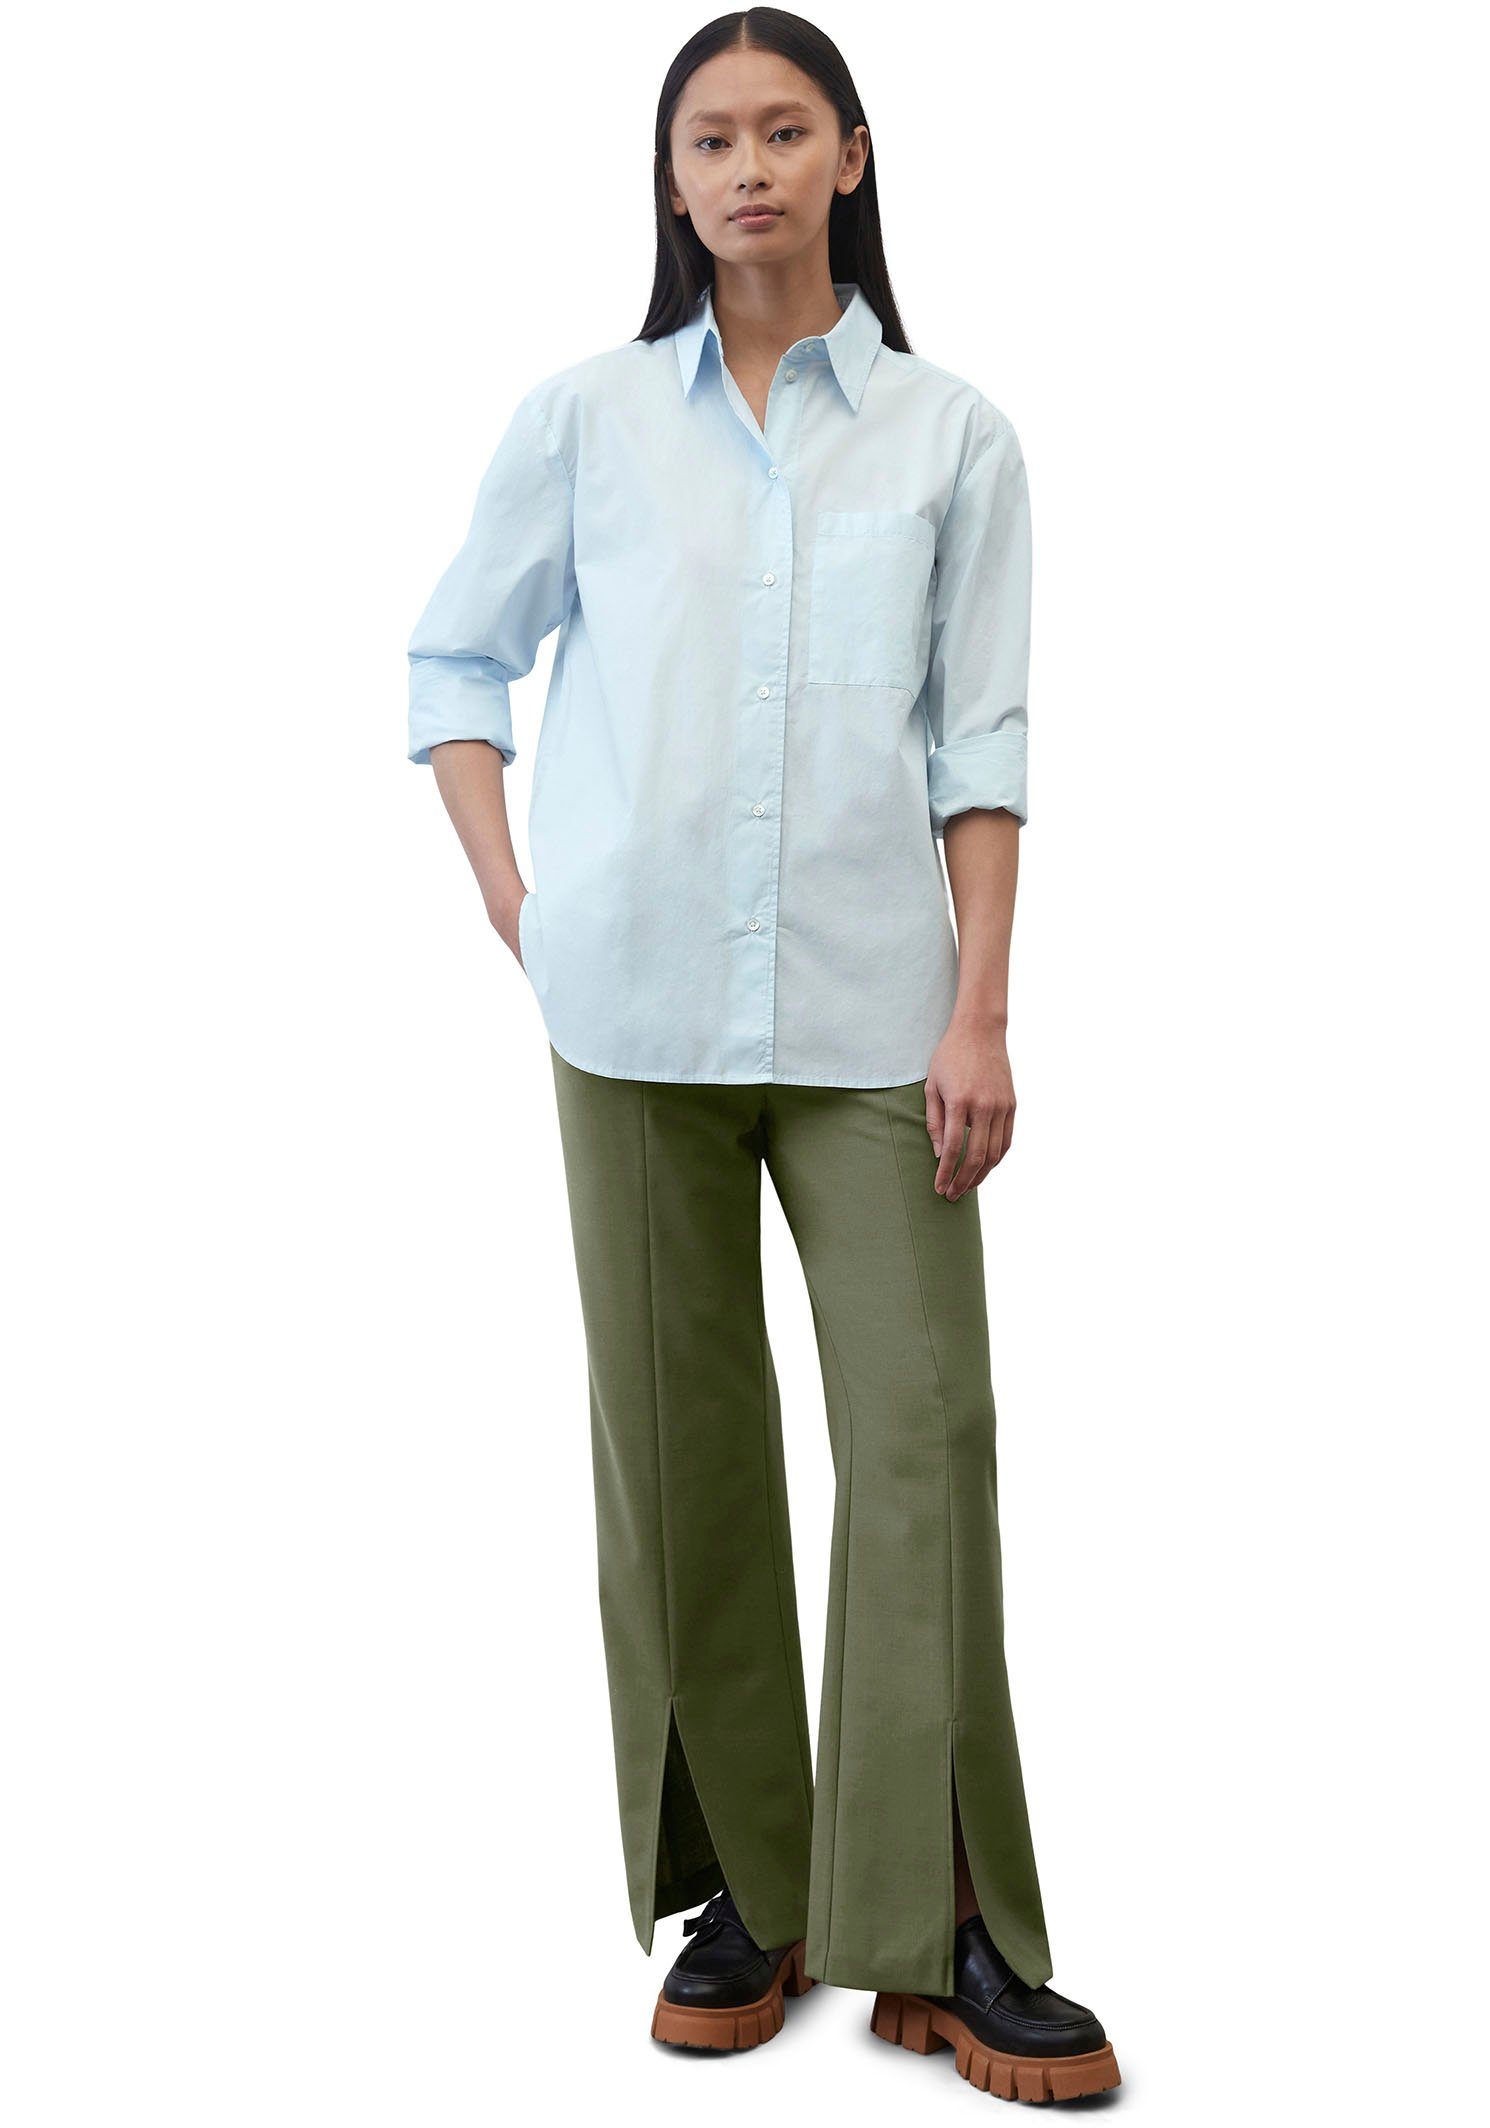 Marc O'Polo Hemdbluse Blouse, long aufgesetzten Brusttasche einer solid kent hellblau pocket, sleeve, patched collar, mit